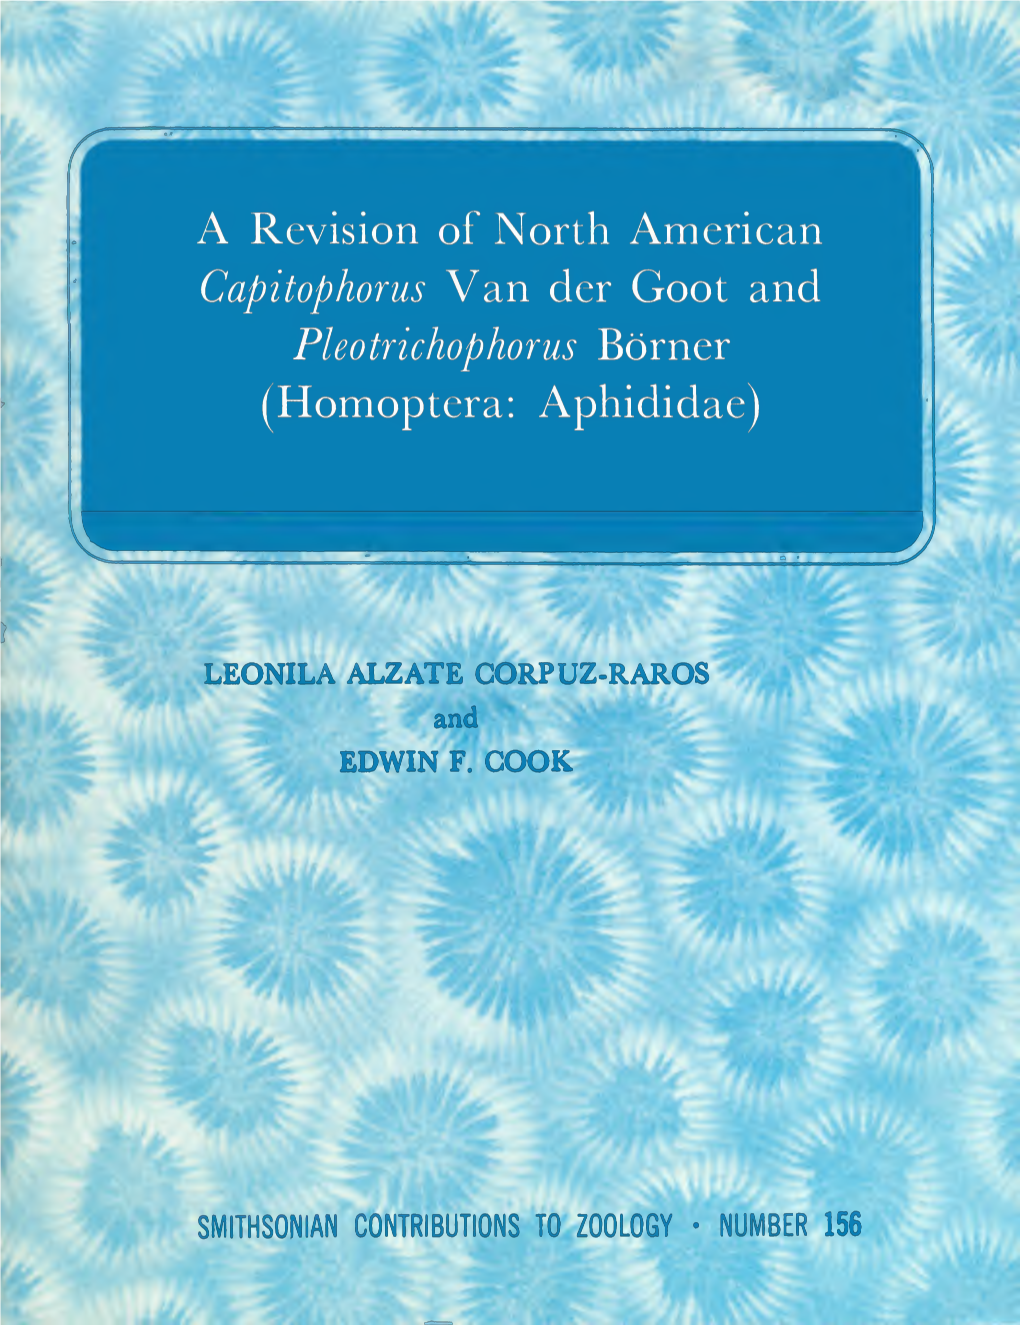 A Revision of North American Capitophorus Van Der Goot and Pleotrichophorus Borner (Homoptera: Aphididae)